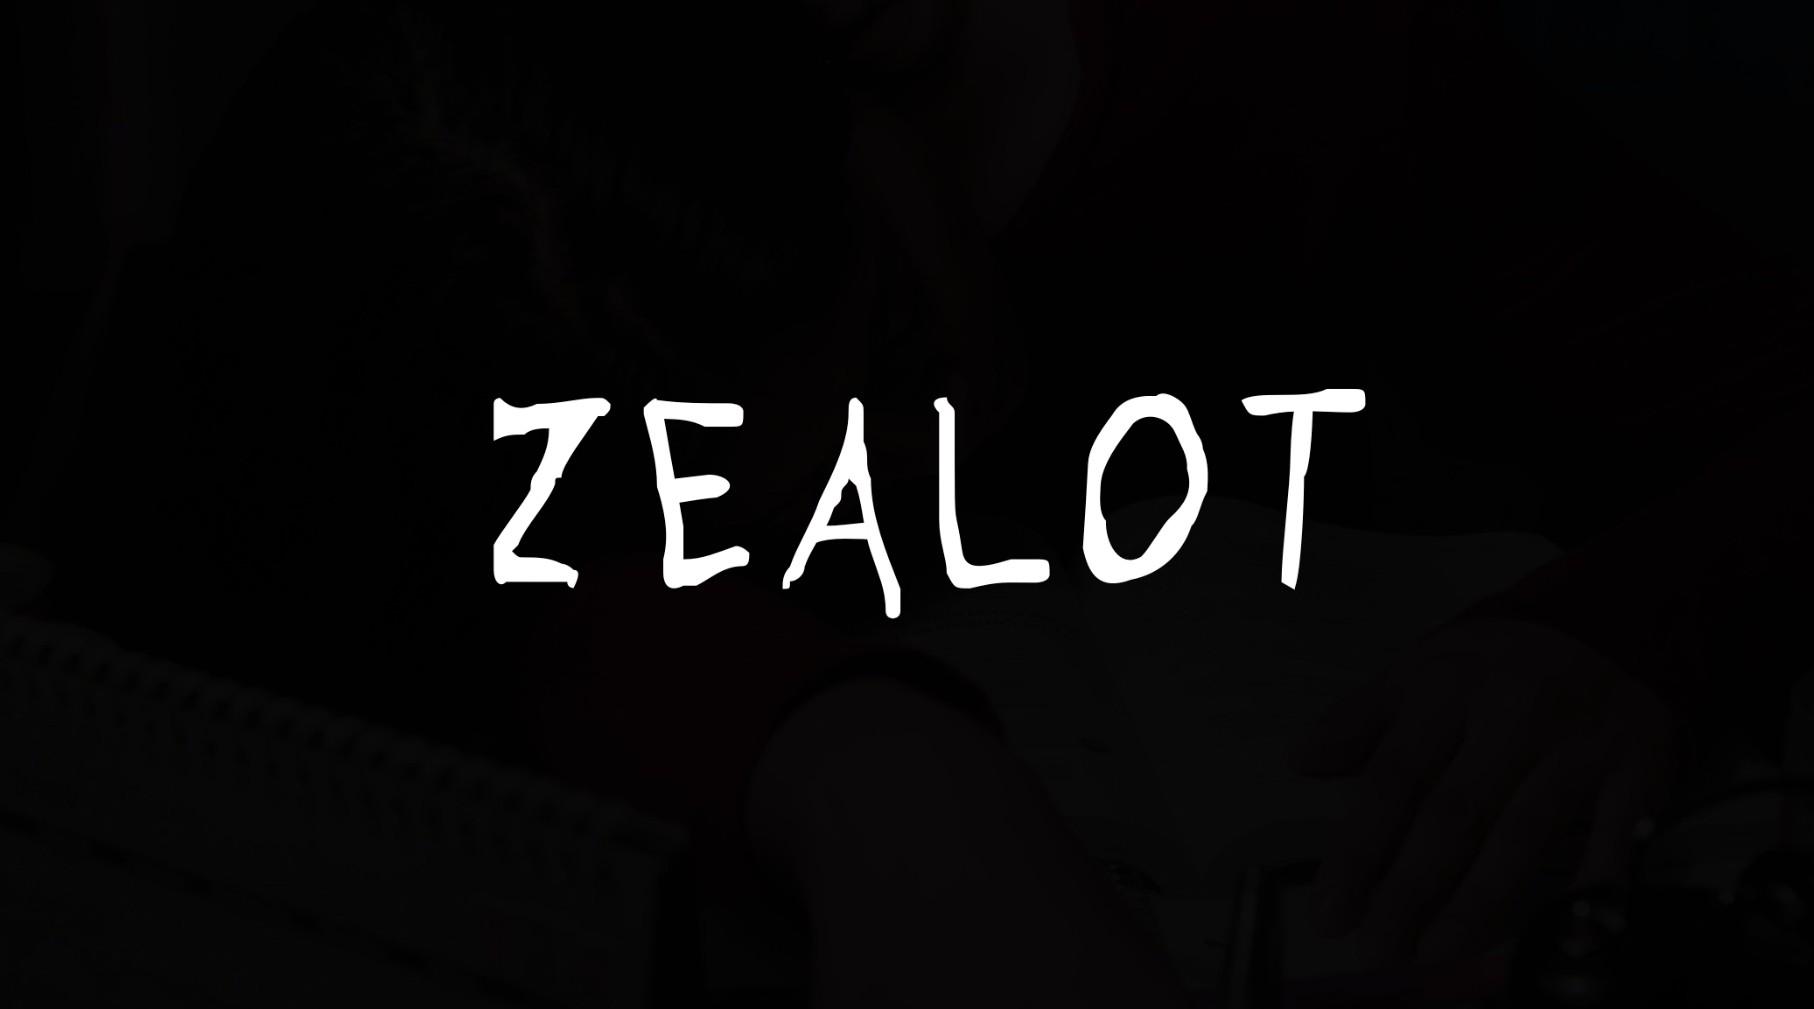 【纽约电影学院】Zealot-狂热